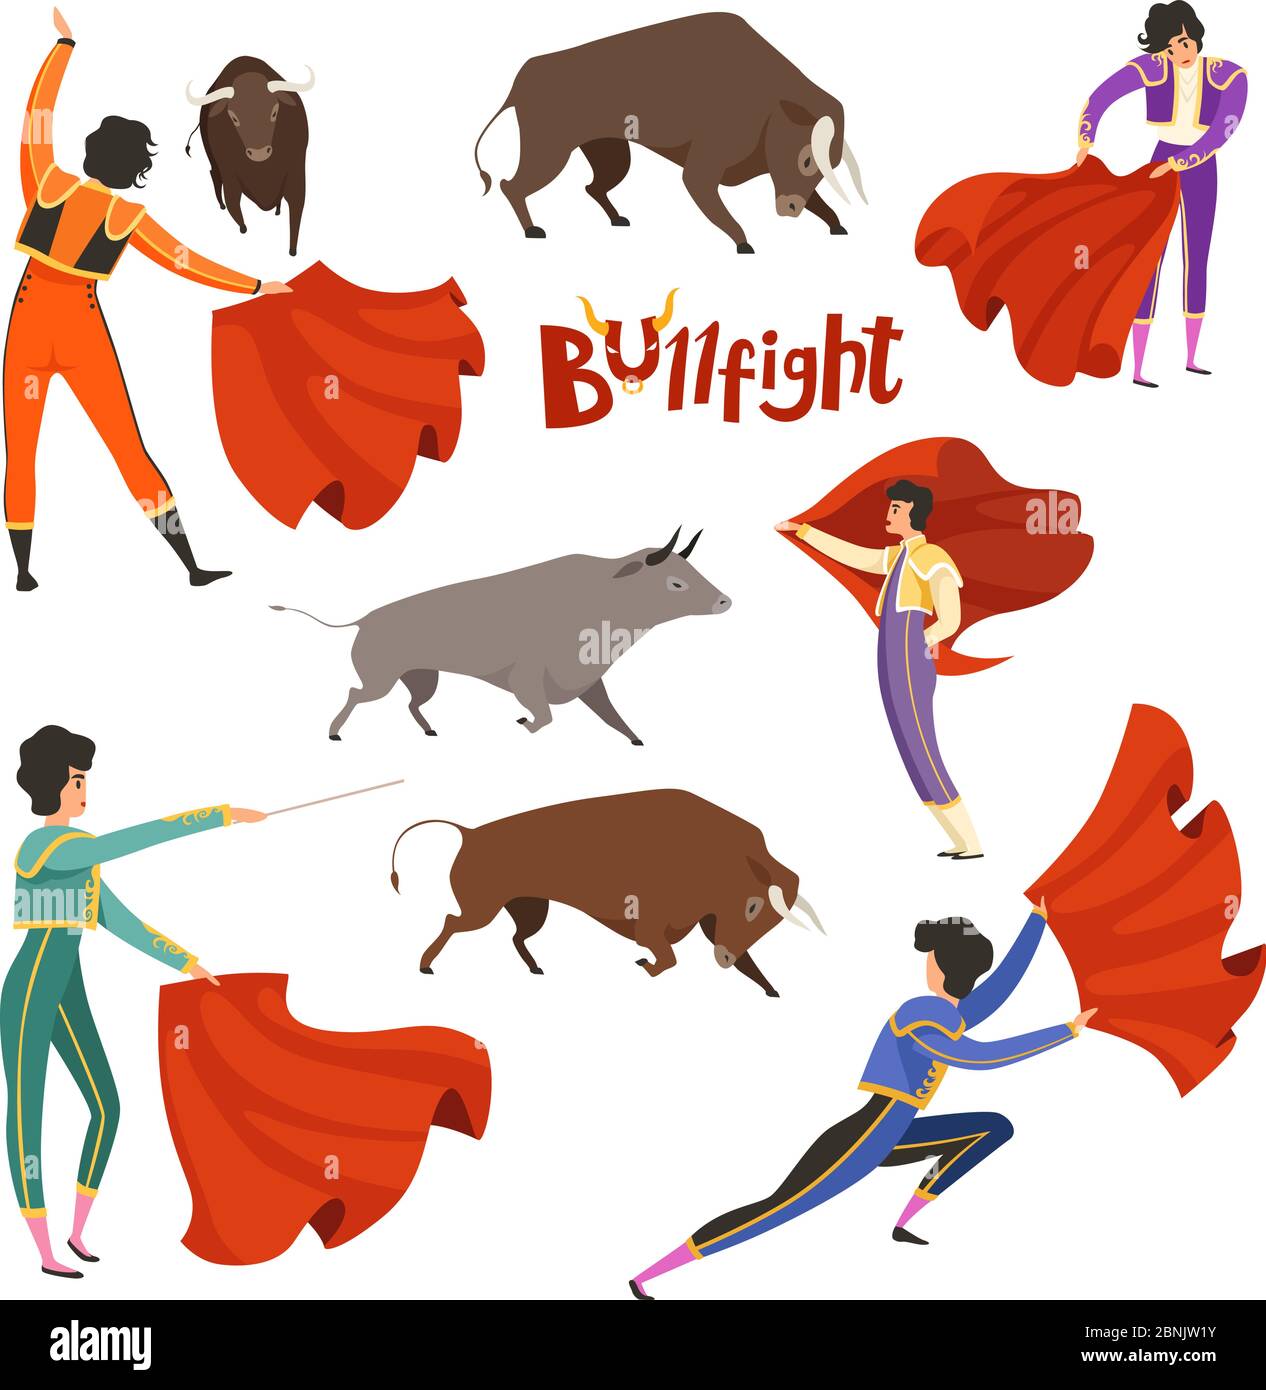 Corrida corrida corrida. Illustrazione vettoriale di matador e toro in varie pose dinamiche Illustrazione Vettoriale